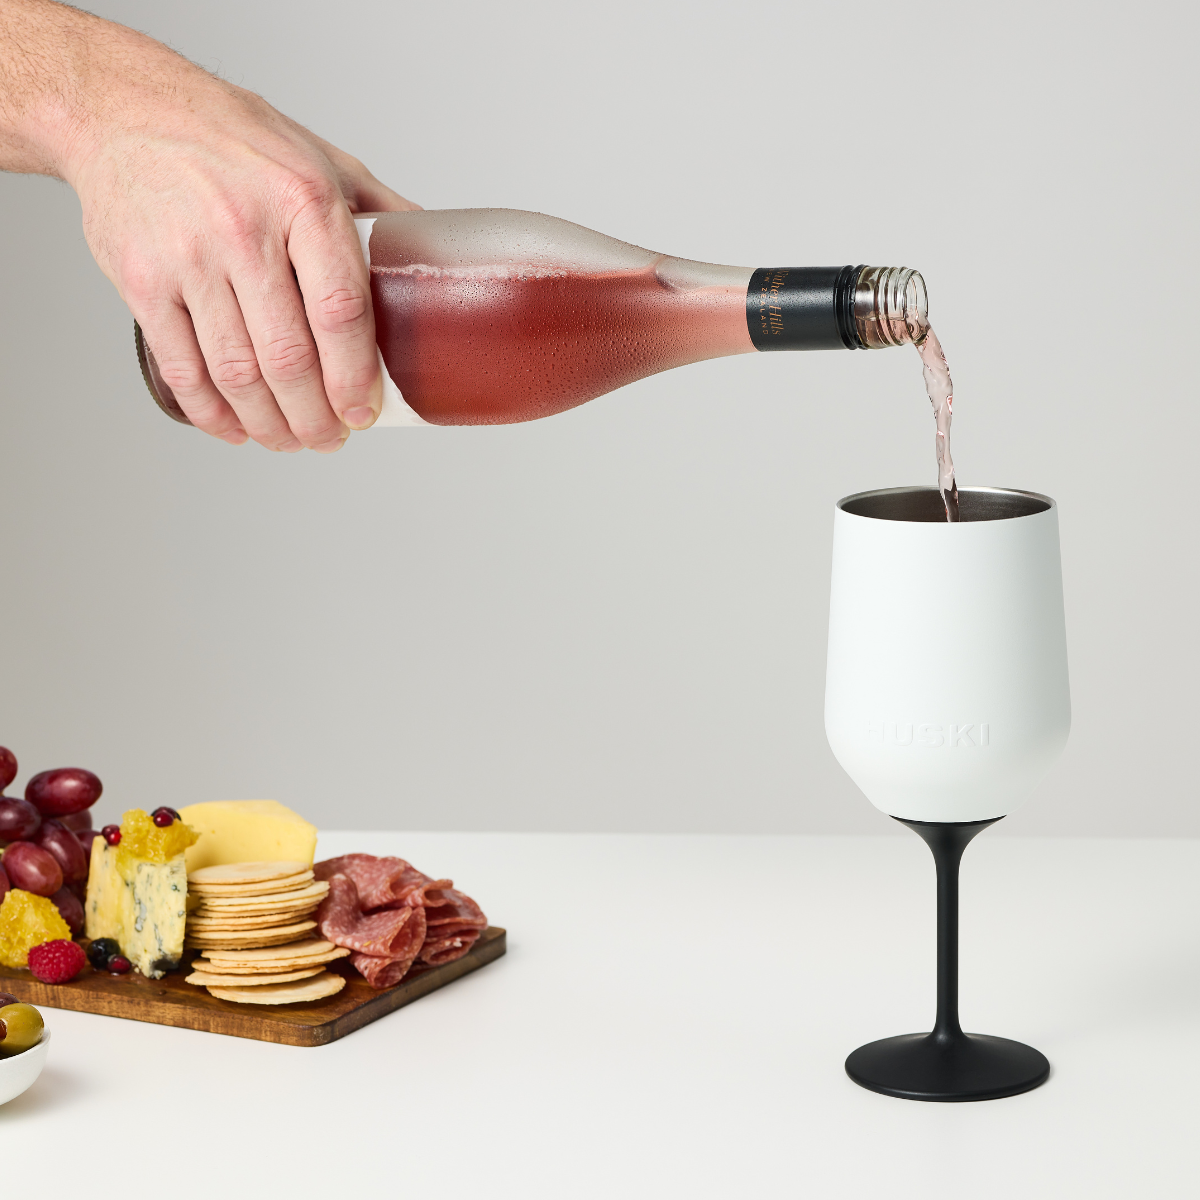 Huski - Wine Tumbler 2.0 - Champagne